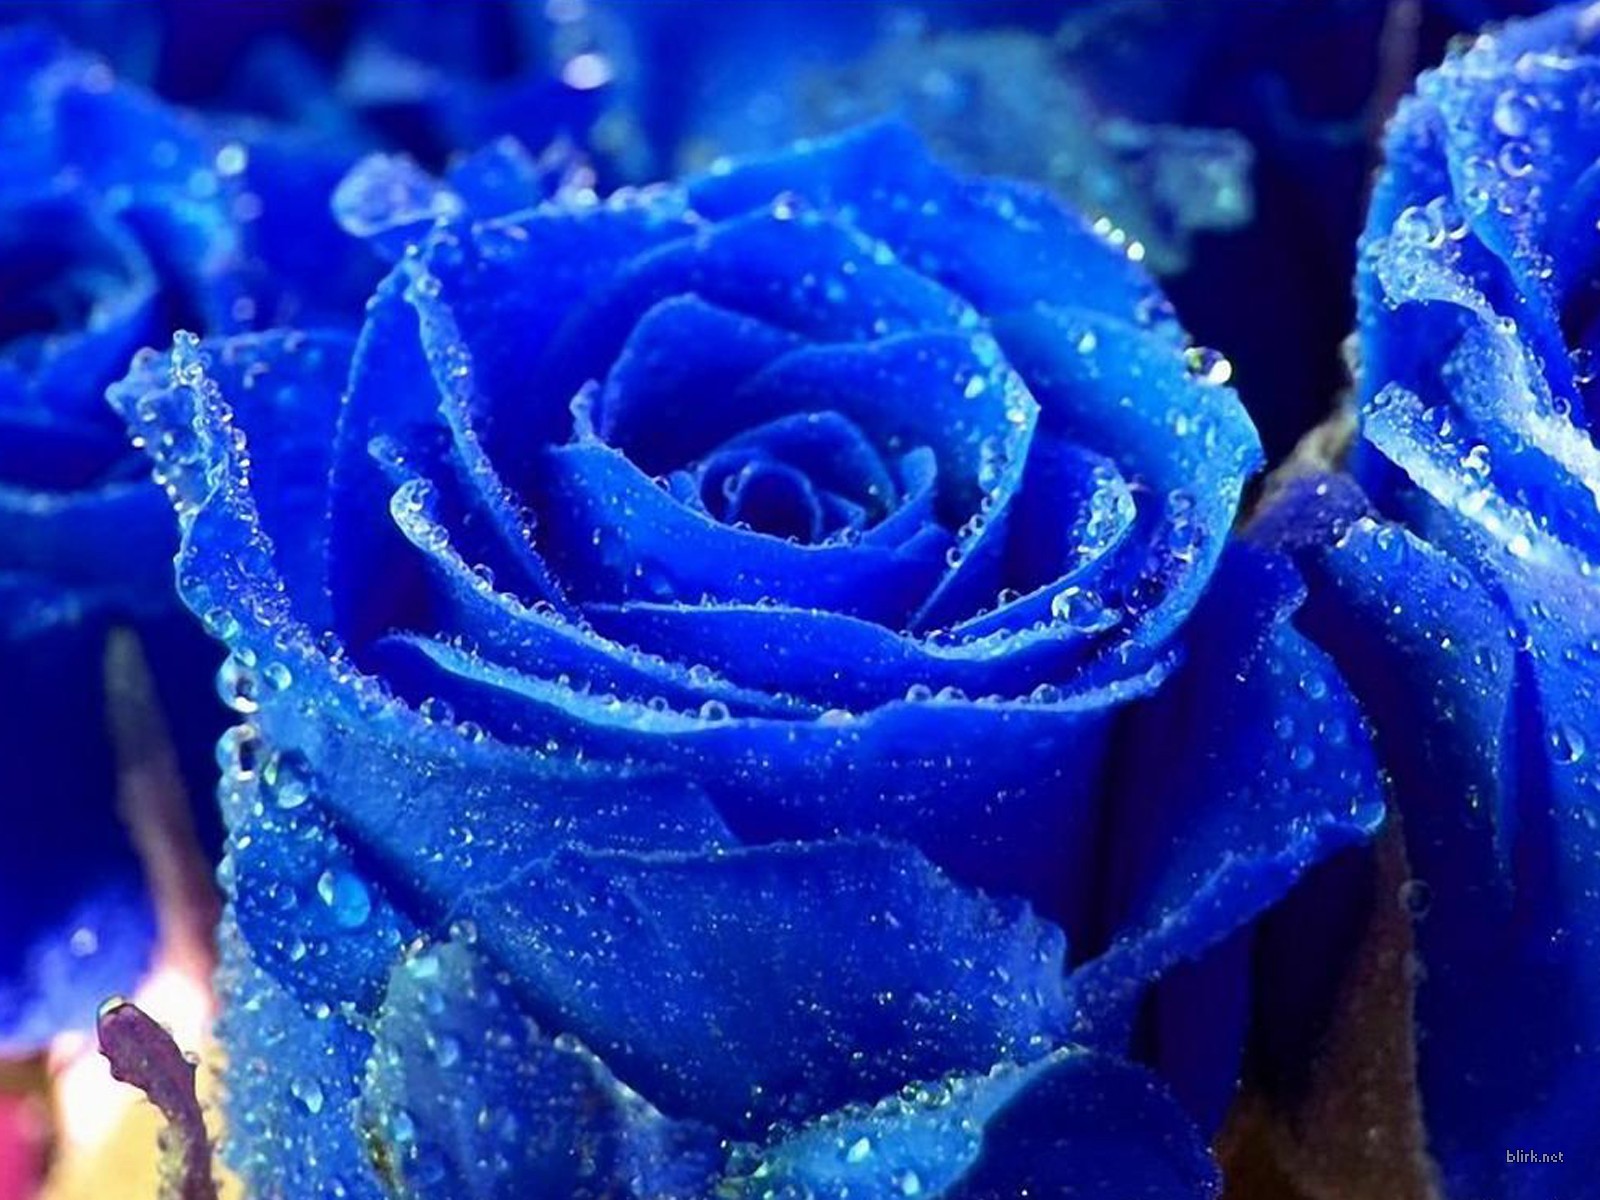 rare wallpaper,rose,blue,garden roses,blue rose,flower